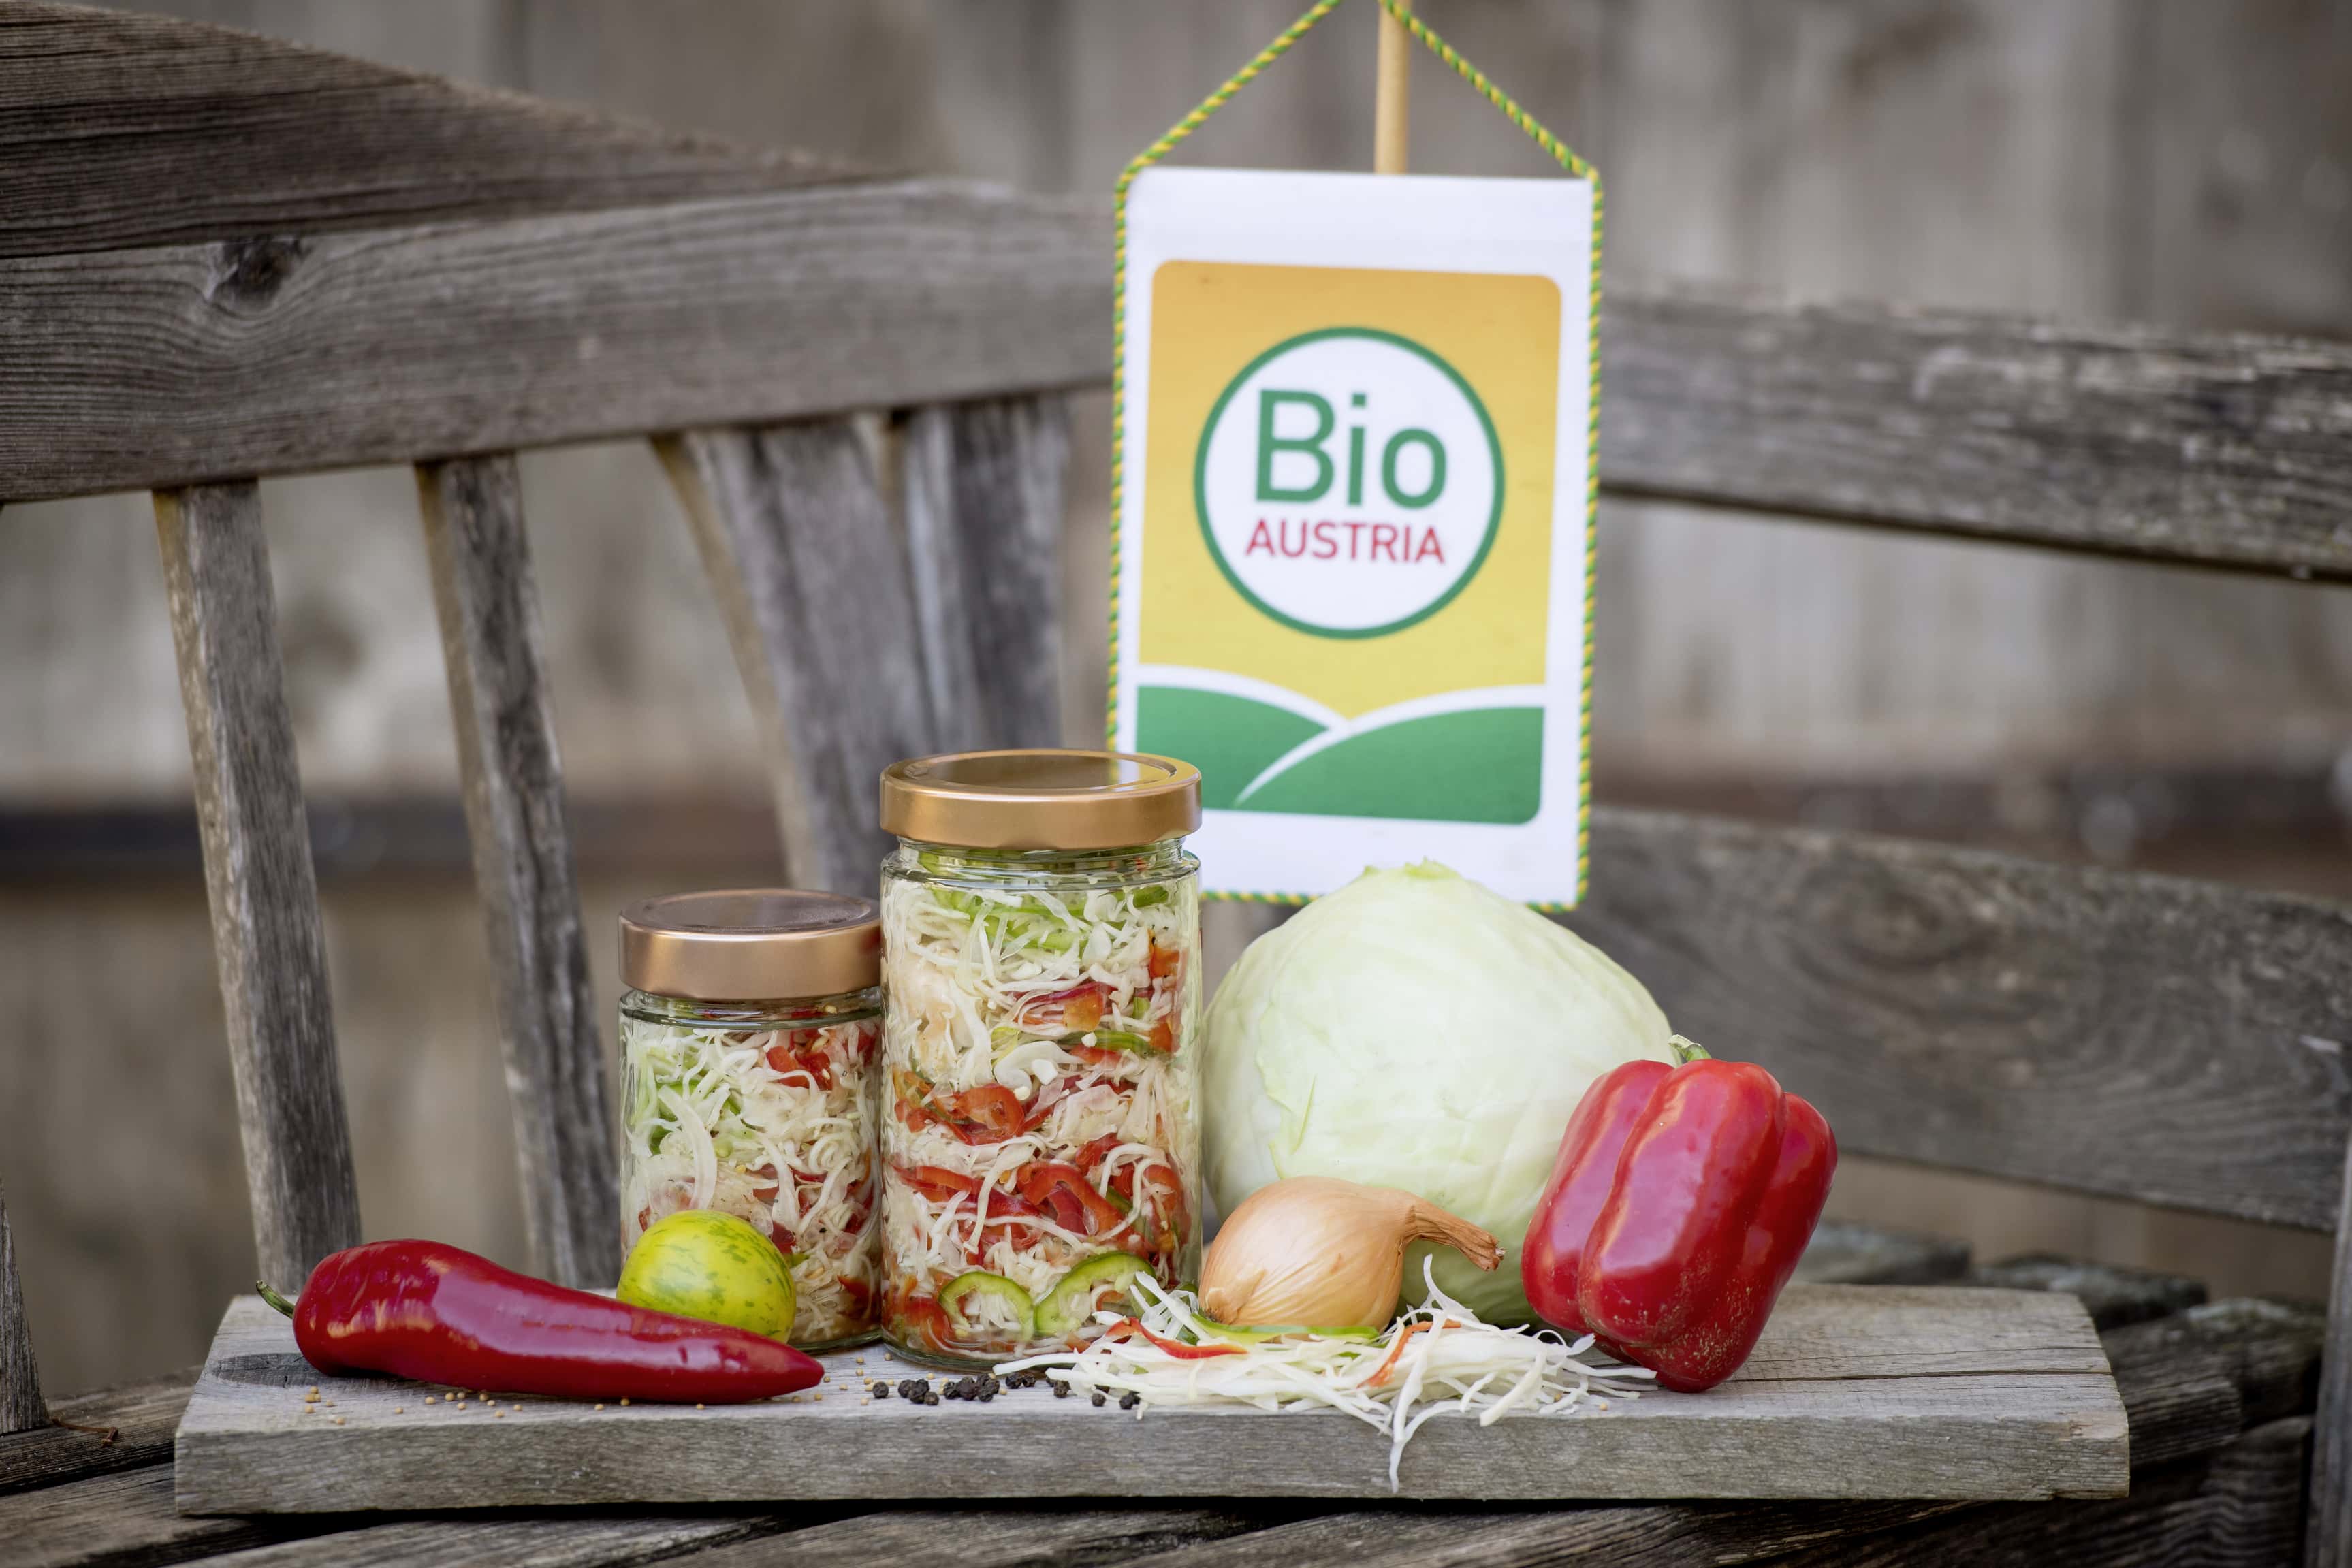 Gemüse im Glas, dahinter das Logo von Bio Austria